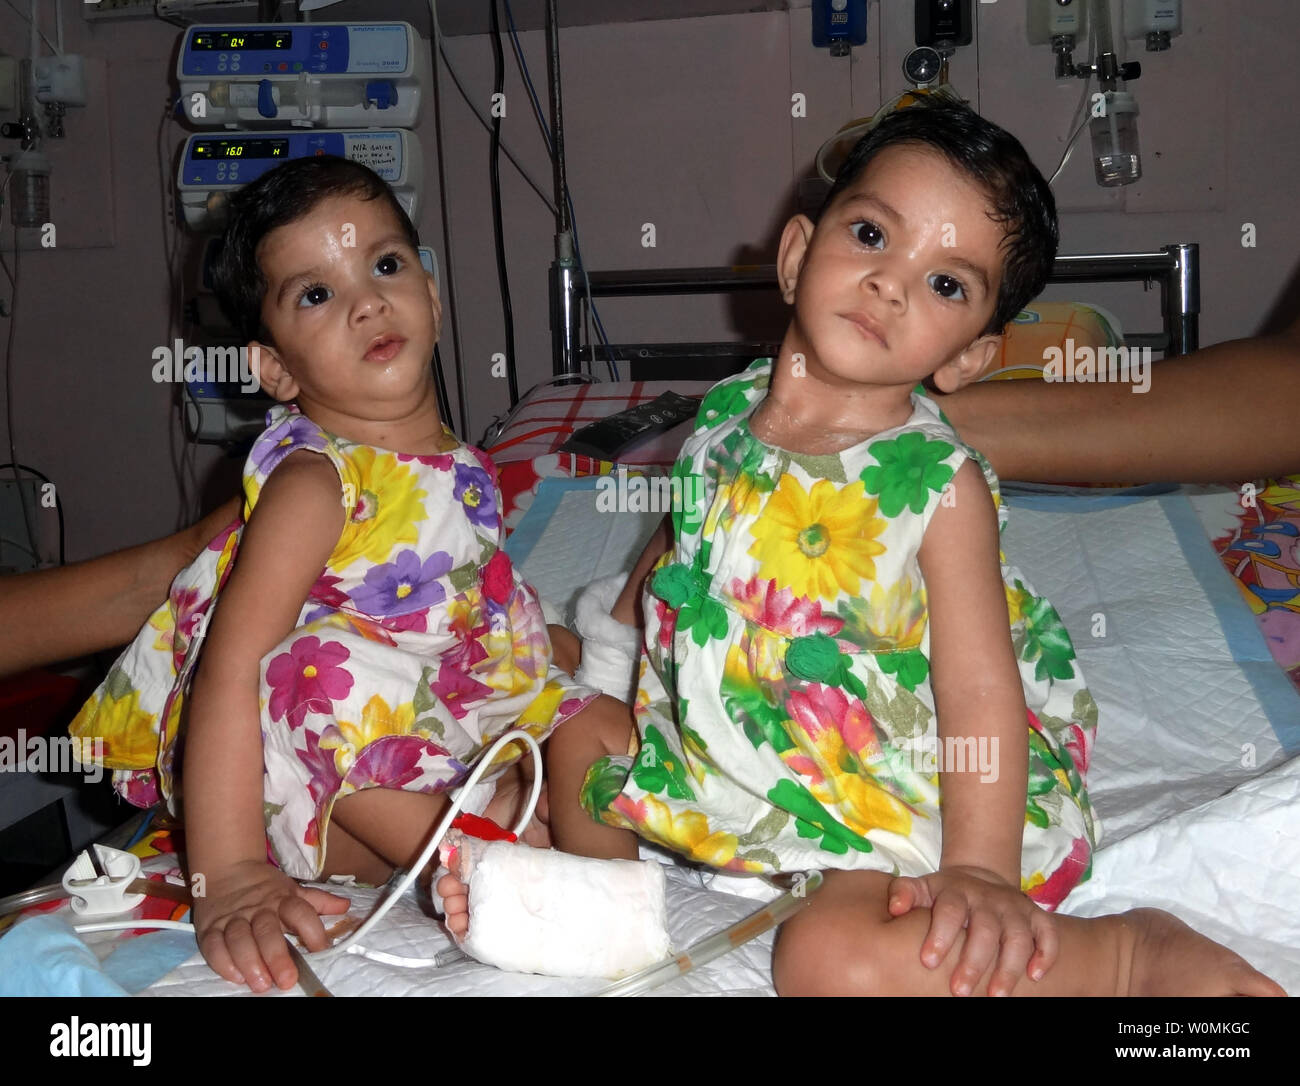 Früher siamesische Zwillinge, Stuti (L) und Aradhana sitzen nebeneinander im Missionskrankenhaus in Padhar, Cavelossim, zentrale Indien am 28. Juni 2012. Die 1-Jahr-olds wurden erfolgreich getrennt nach einer 12-stündigen Operation am 20. Juni, von einem Team von 34 medizinischen Experten durchgeführt, darunter 23 Ärzte, aus Indien und dem Ausland gezeichnet. Die 1-Jahr-alten Schwestern, die an Herz und Leber verbunden waren. UPI Foto/STR. Stockfoto